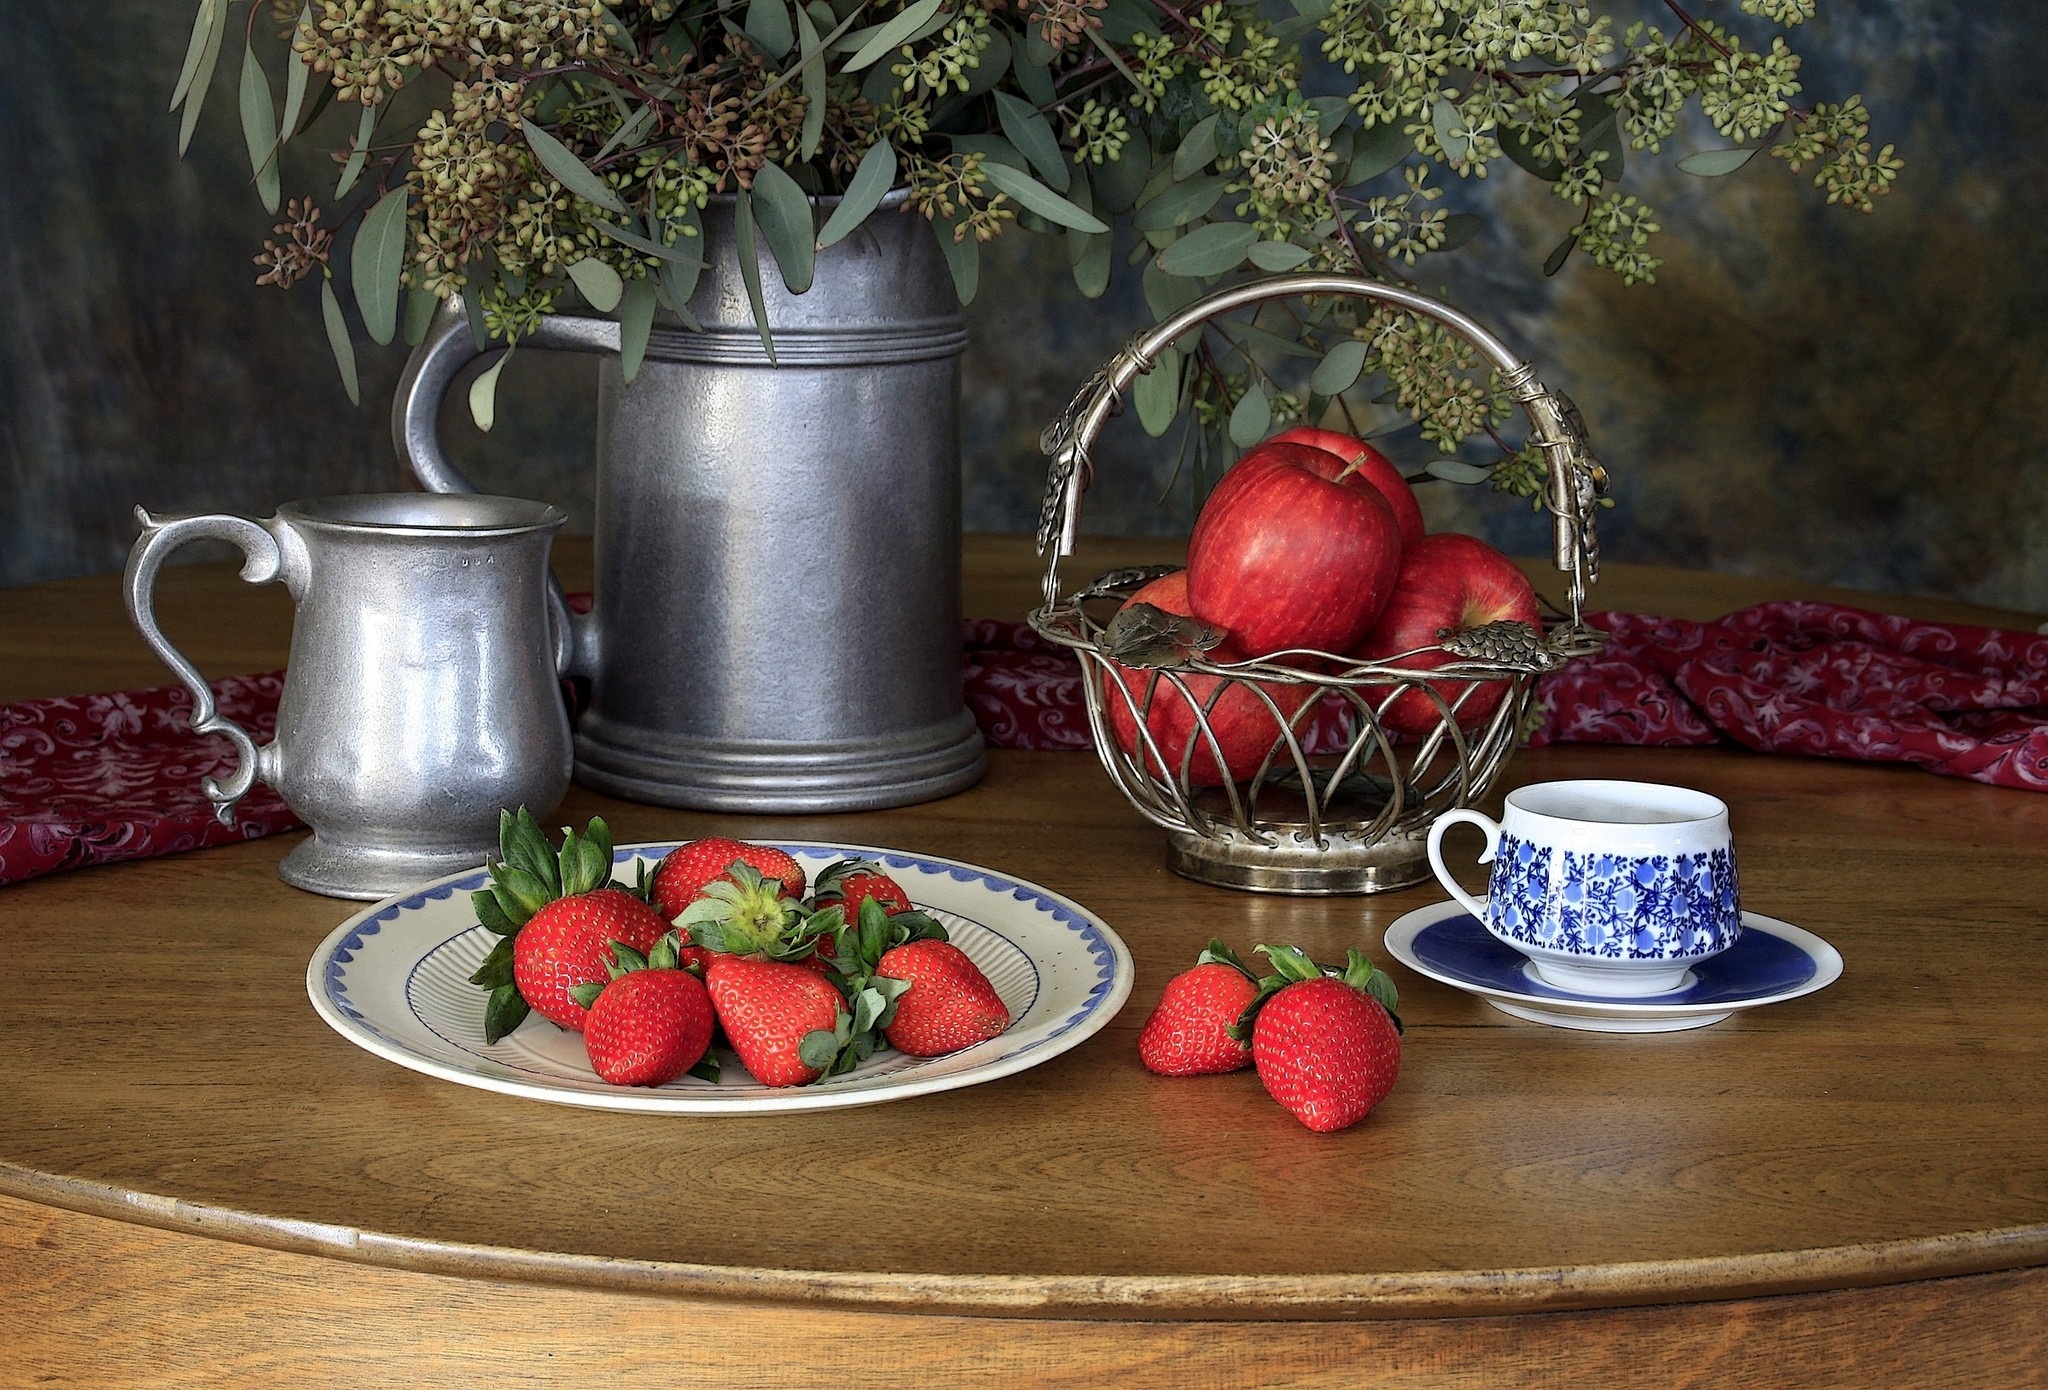 Чай с фруктами и ягодами. Натюрморт с посудой. Натюрморт с ягодами. Натюрморт с клубникой. Фотонатюрморты с посудой.